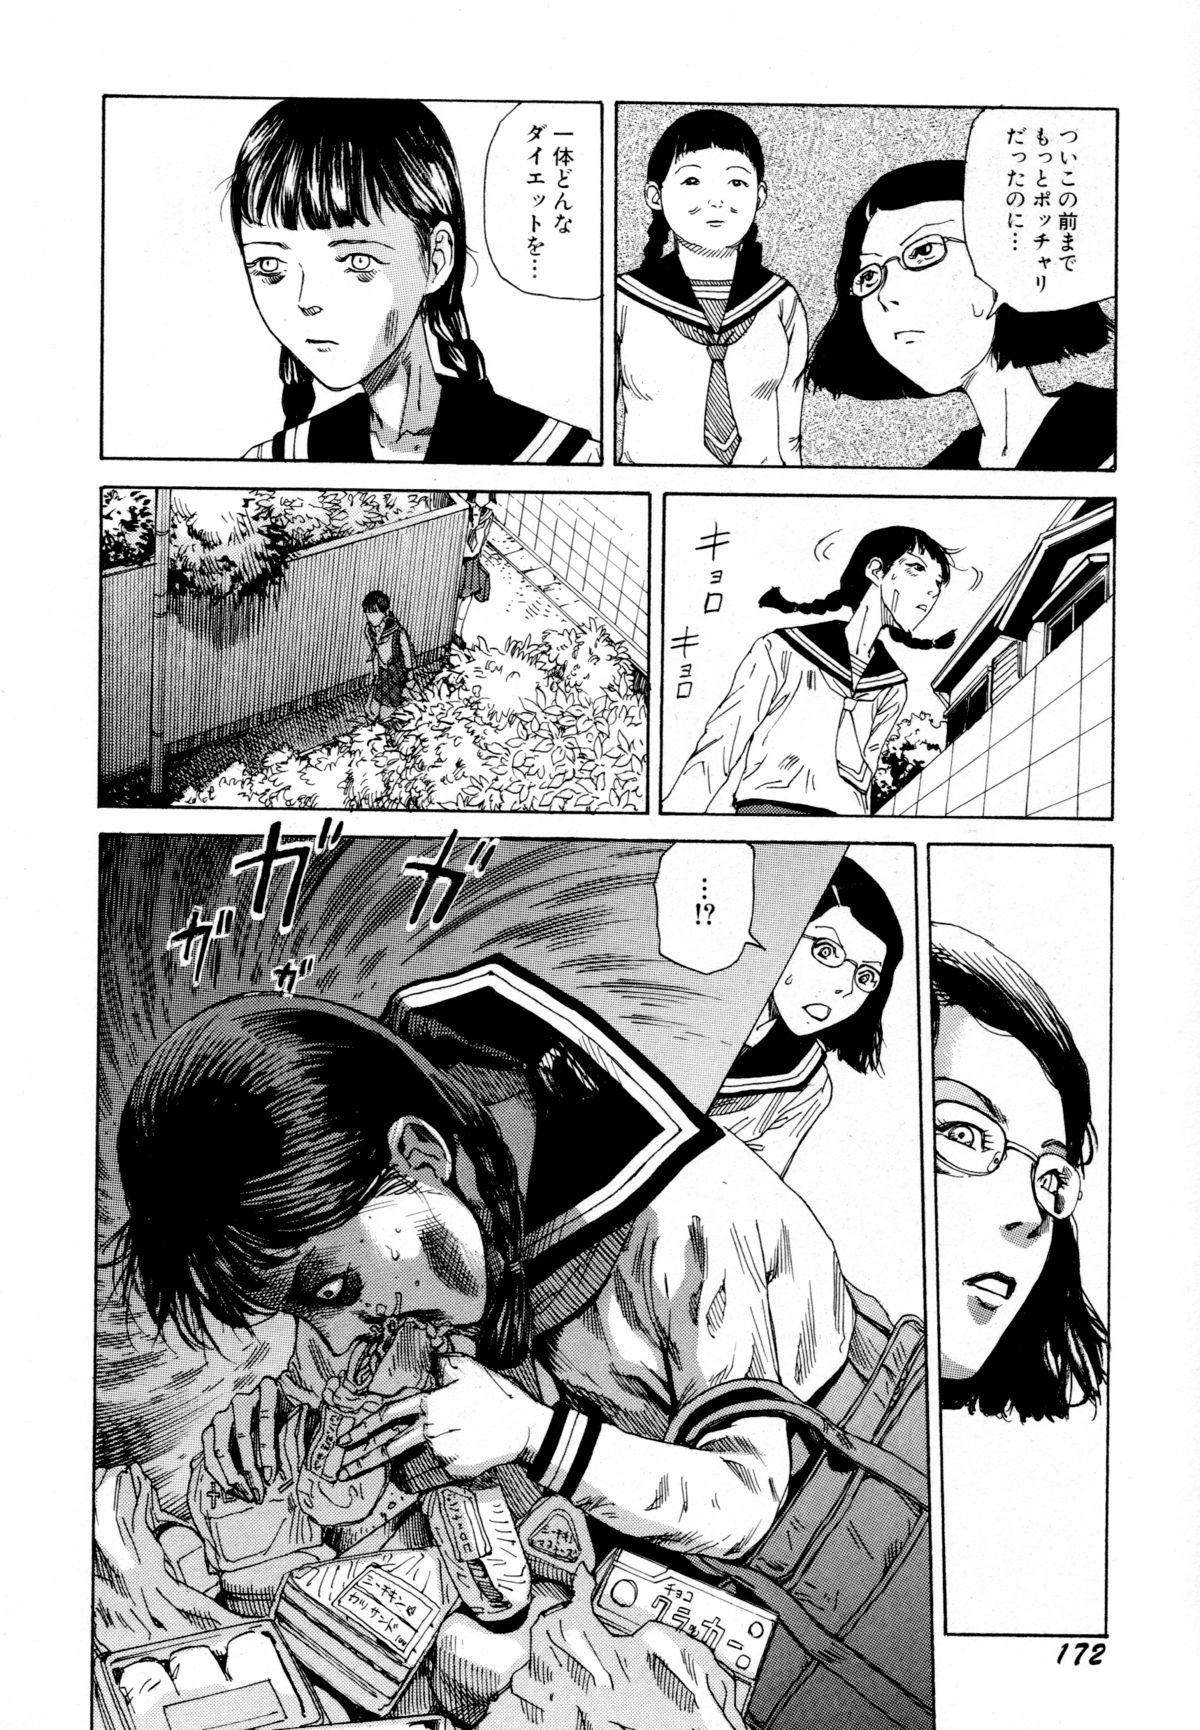 Arijigoku vs Barabara Shoujo - Antlion vs BaraBara Girl 173